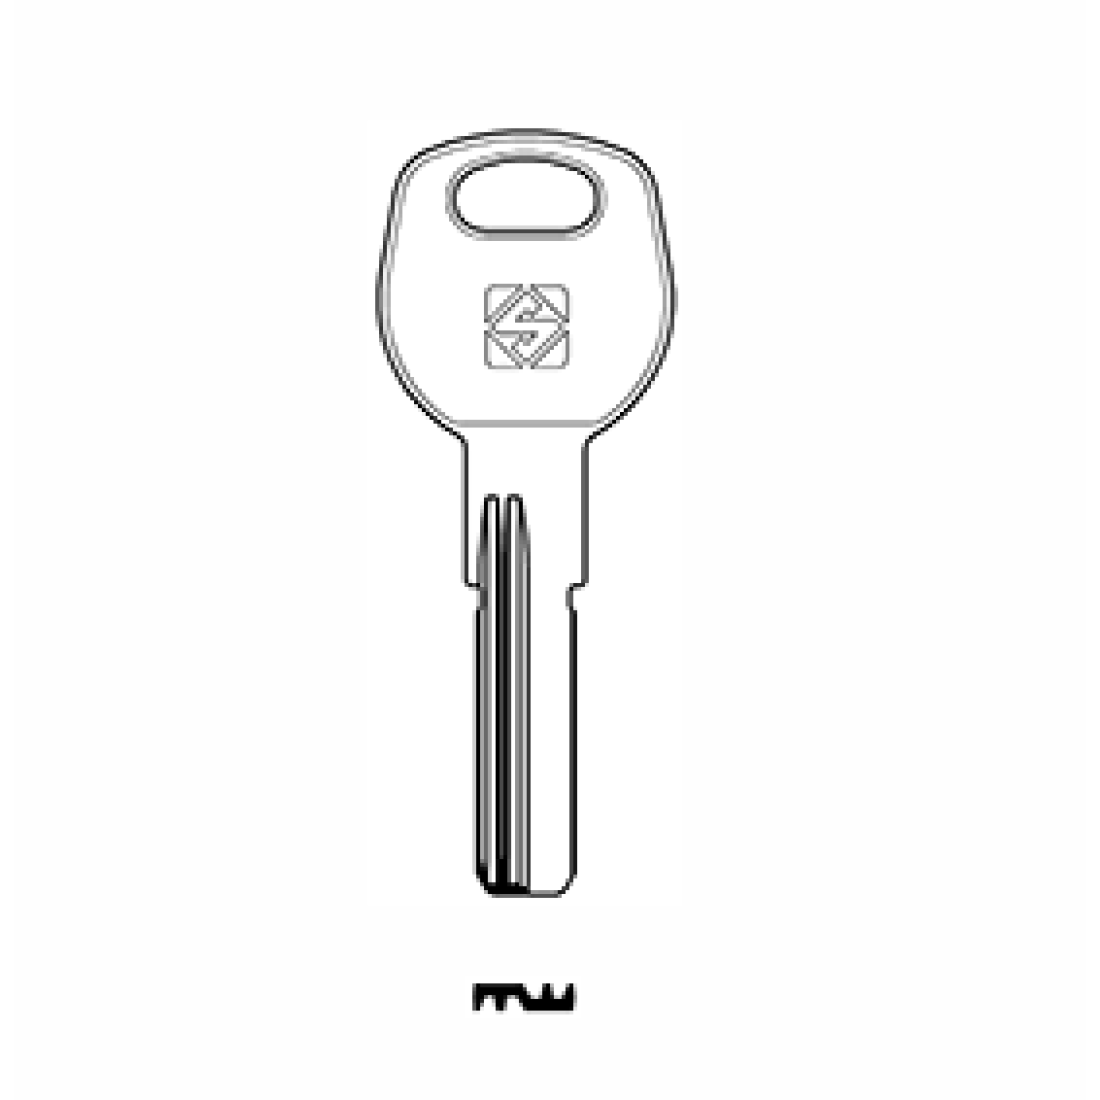 Ключ WJ. Заготовка ключа Mercedes Silca. Заготовка пластик Silca. Заготовка луночного ключа. Profile key